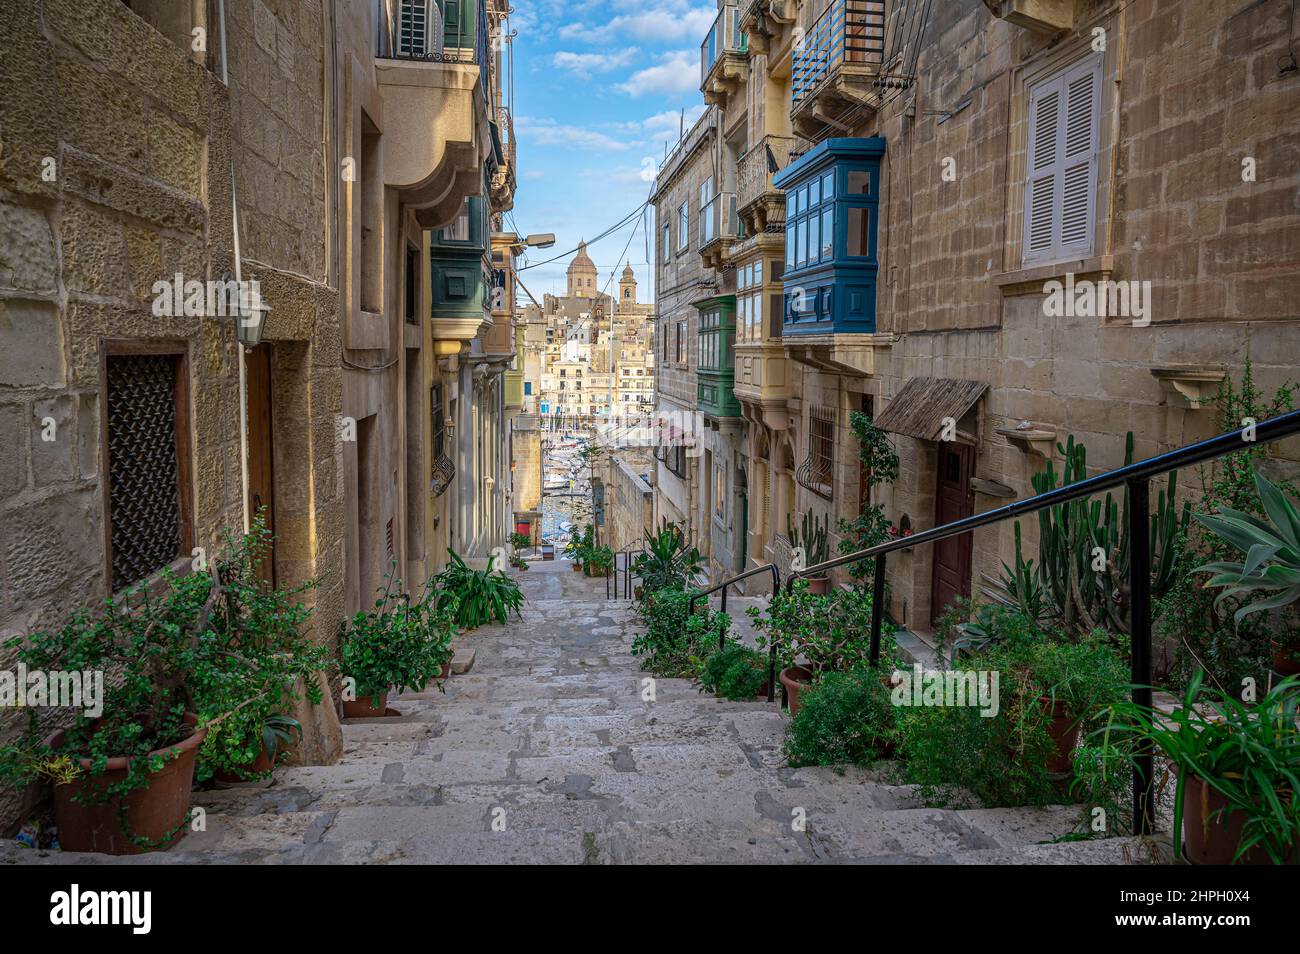 Narrow street with stairs in Valletta, Malta Stock Photo